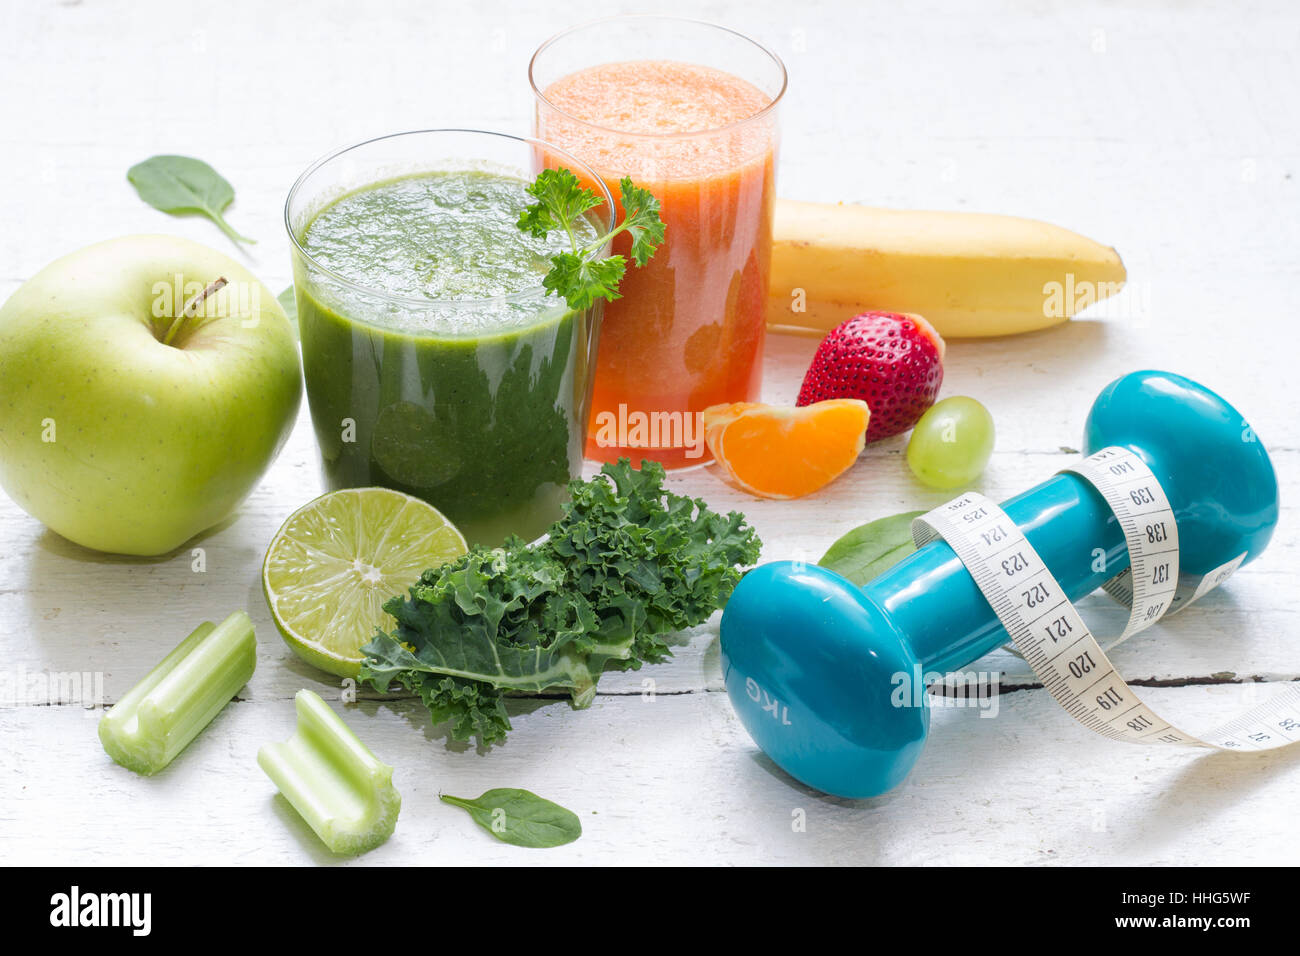 Obst, Gemüse, Saft, Smoothie und Hantel Gesundheit Ernährung und Fitness Lifestyle-Konzept Stockfoto